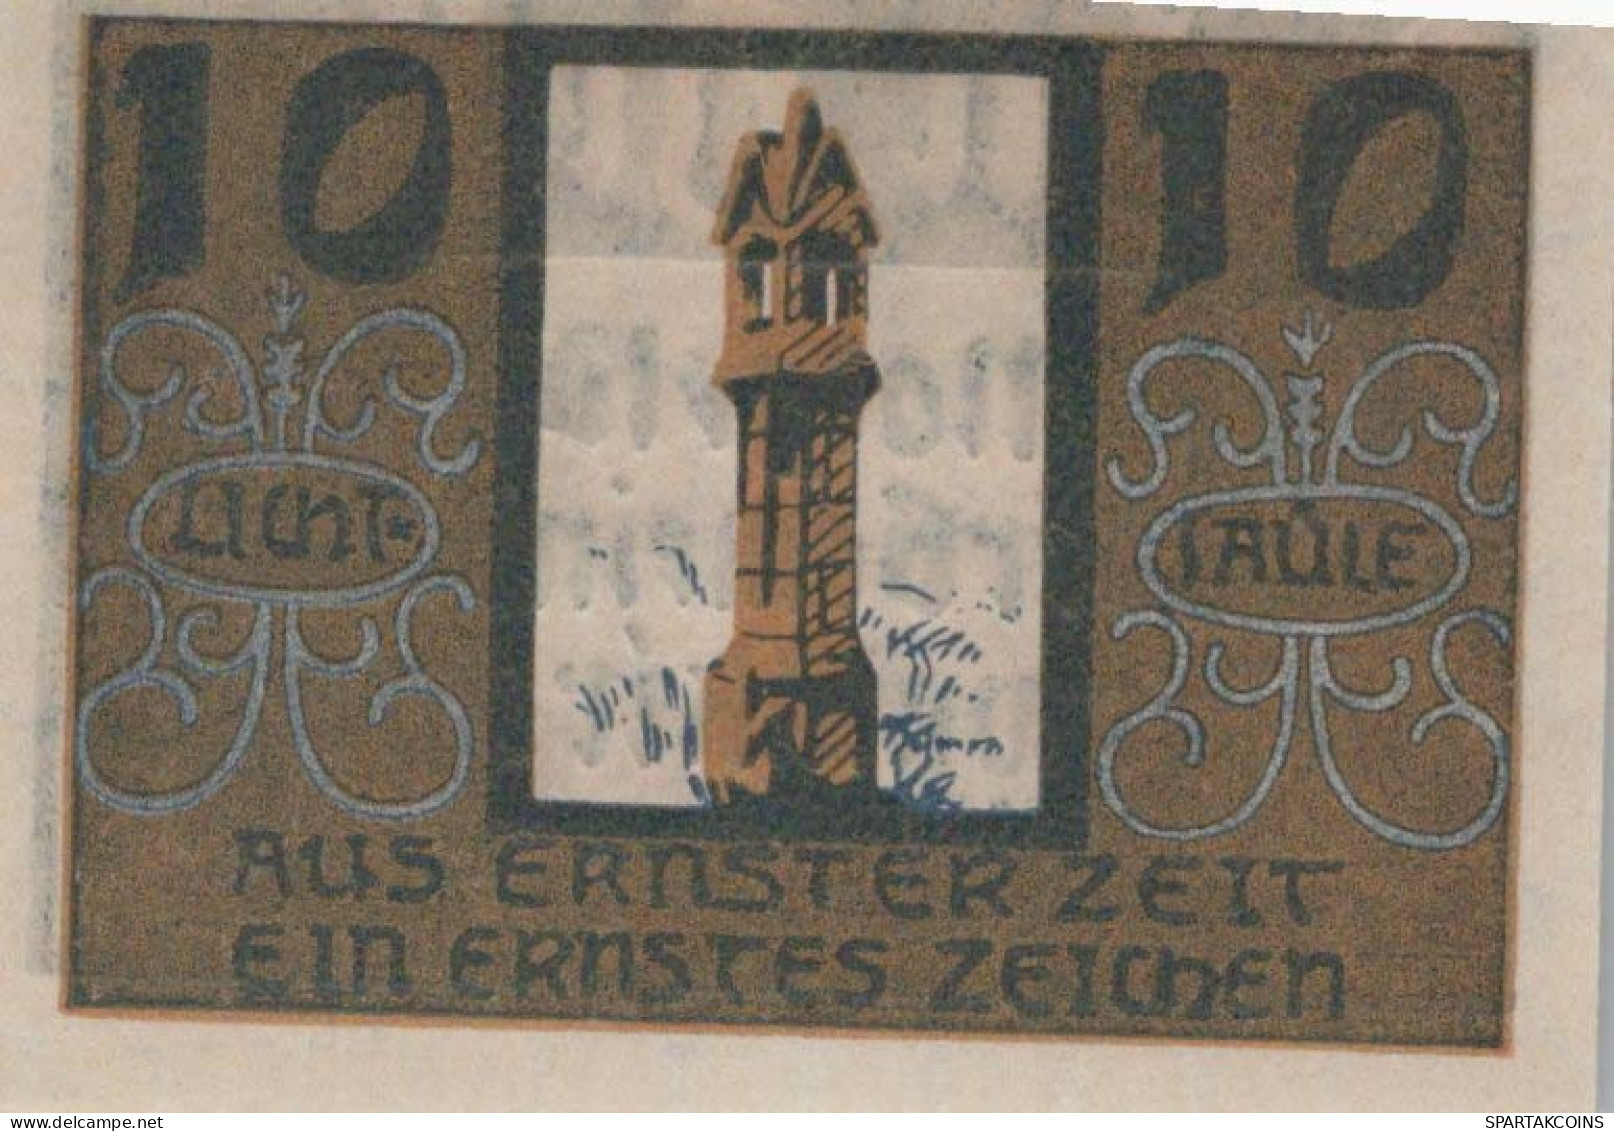 10 HELLER 1920 Stadt NIEDERWALDKIRCHEN Oberösterreich Österreich Notgeld #PI414 - [11] Lokale Uitgaven